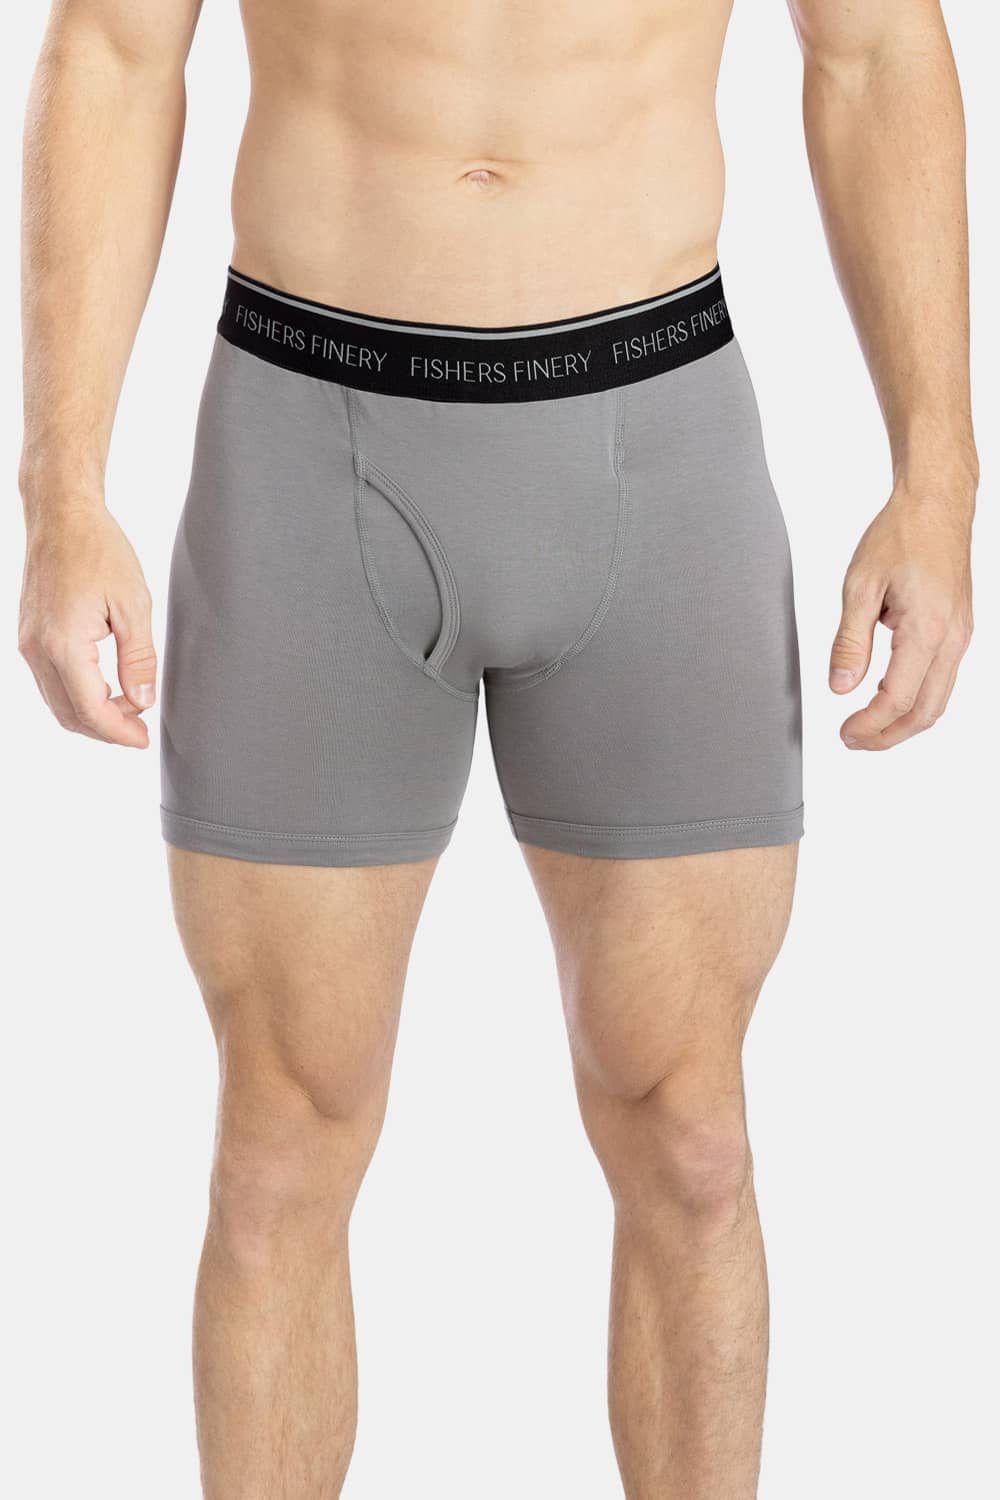 mens underwear men's underwear underwear for men pack mens